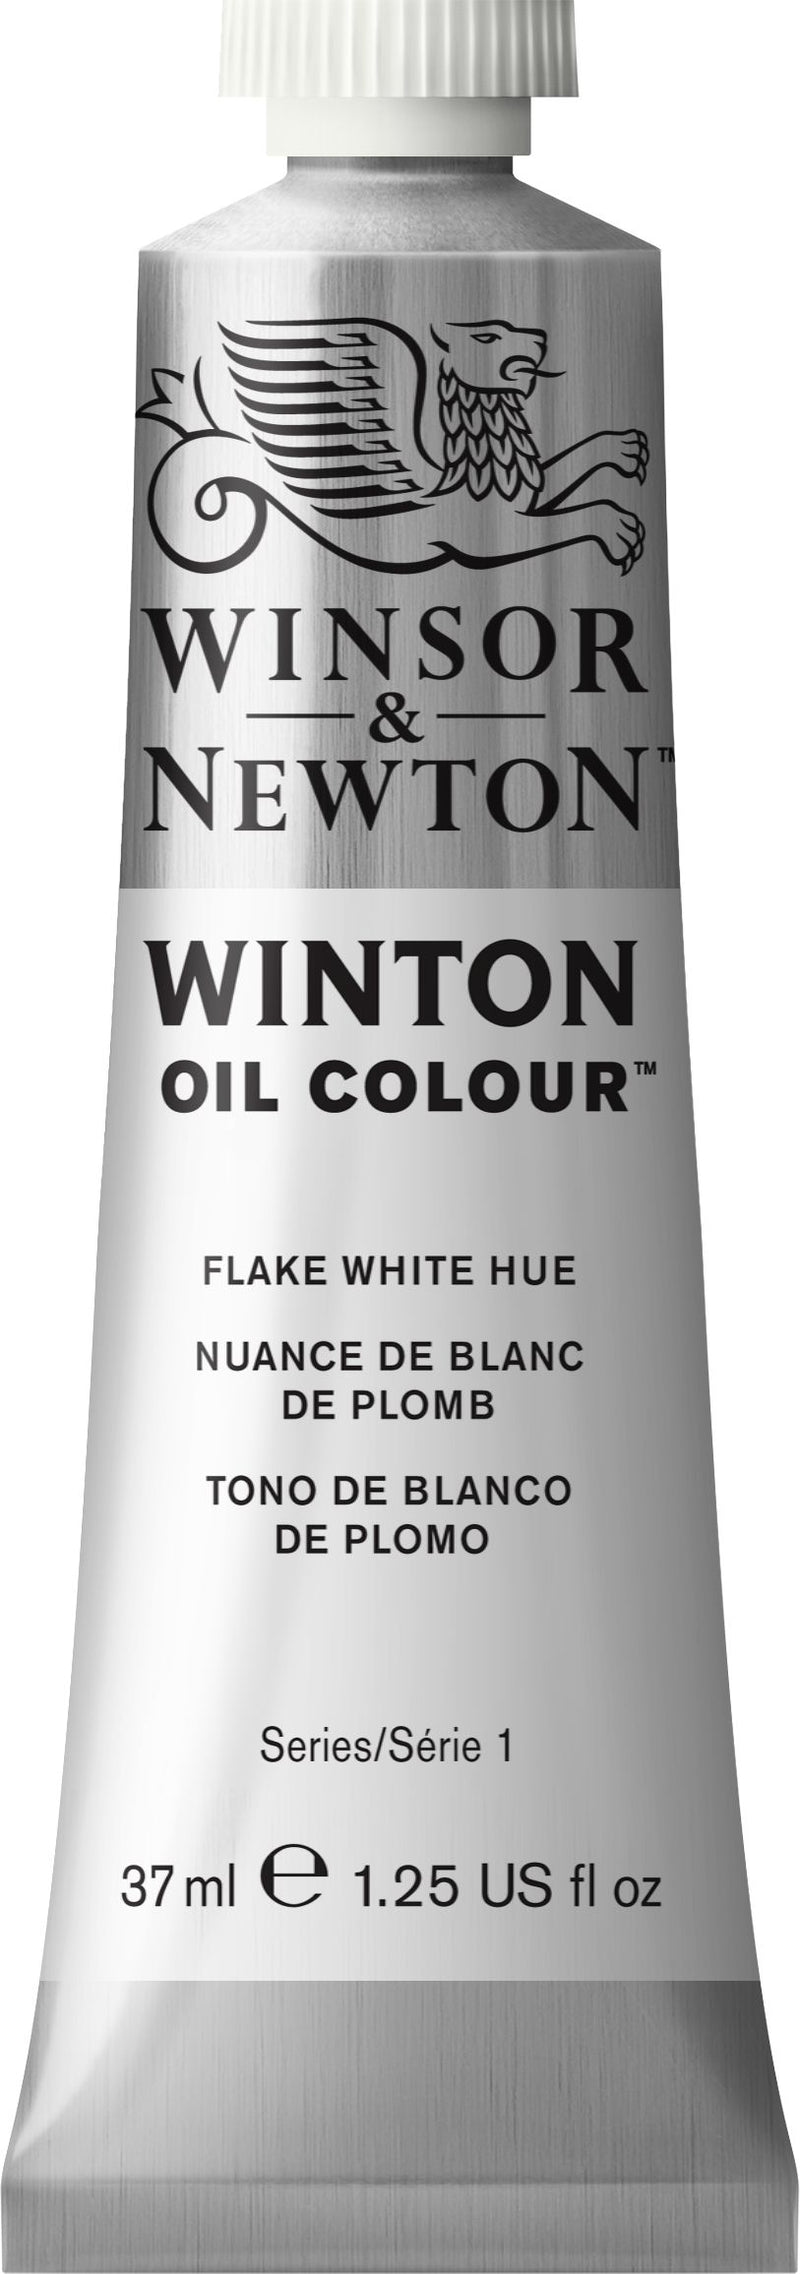 Winton Oil Colour Flake White Hue - 37ml tube